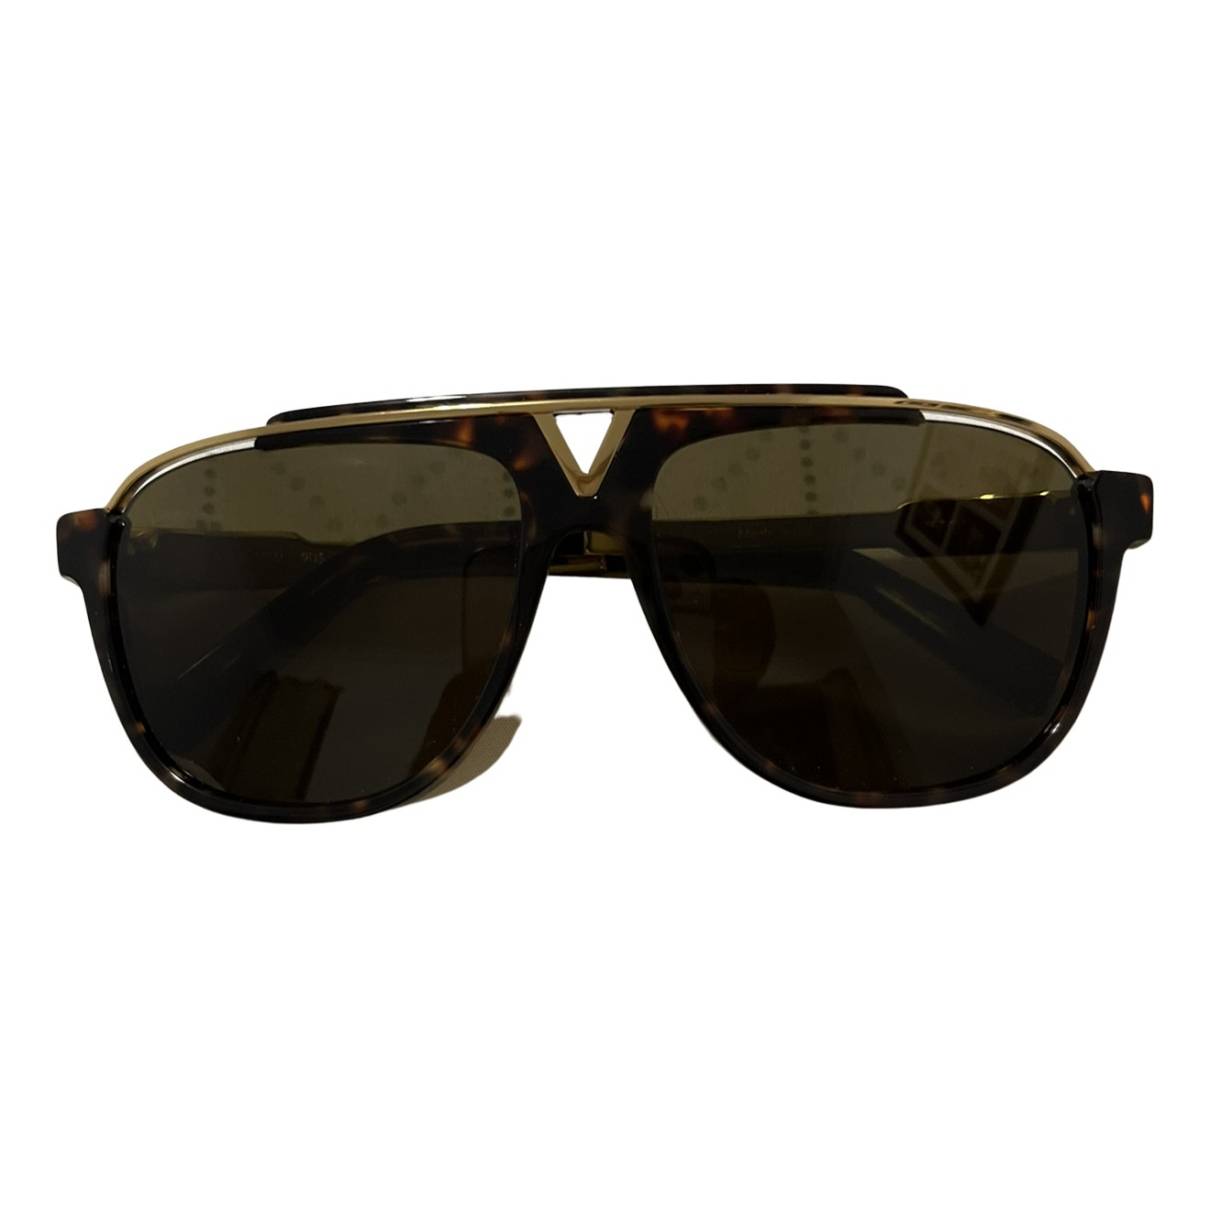 Louis Vuitton, Accessories, Louis Vuitton Mascot Sunglasses